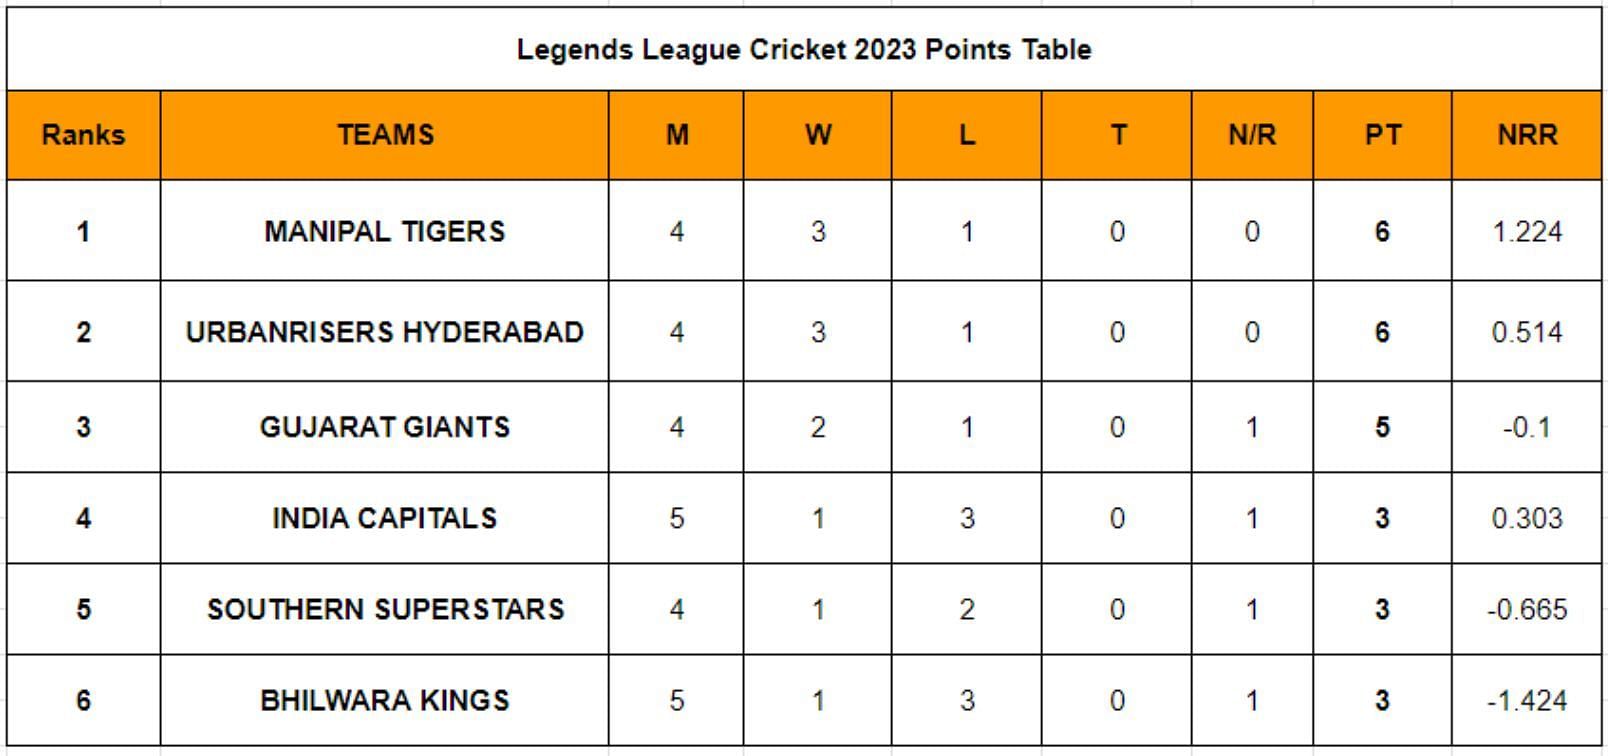 Legends League Cricket 2023 Points Table